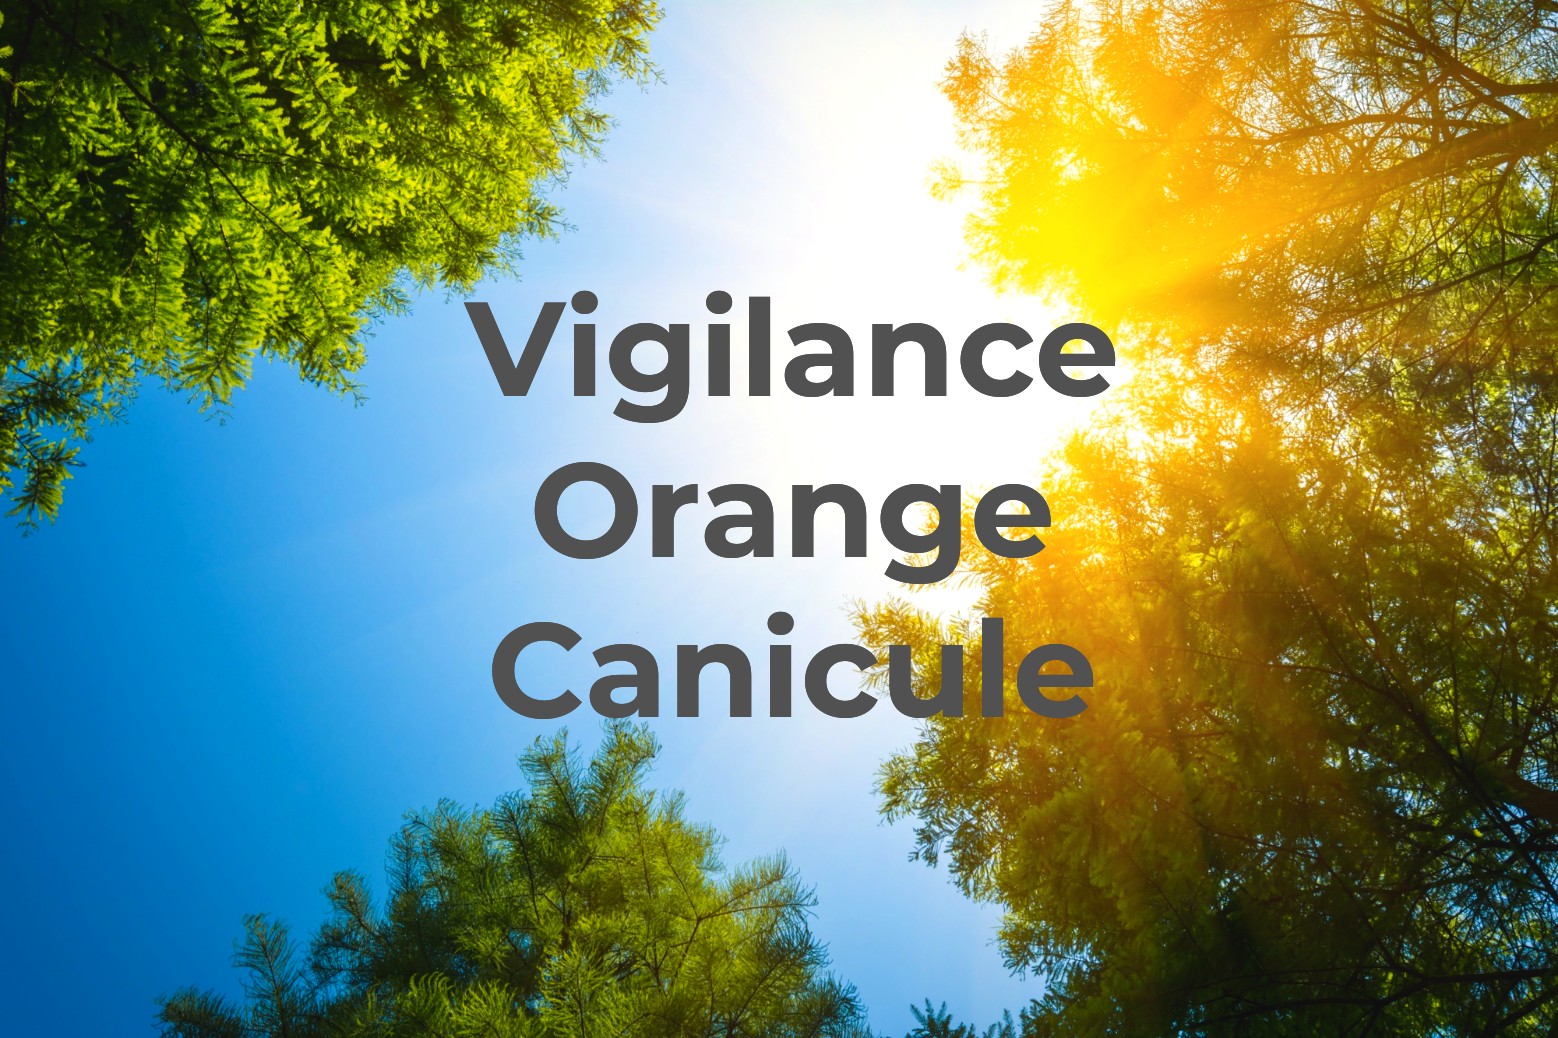 Vigilance Canicule